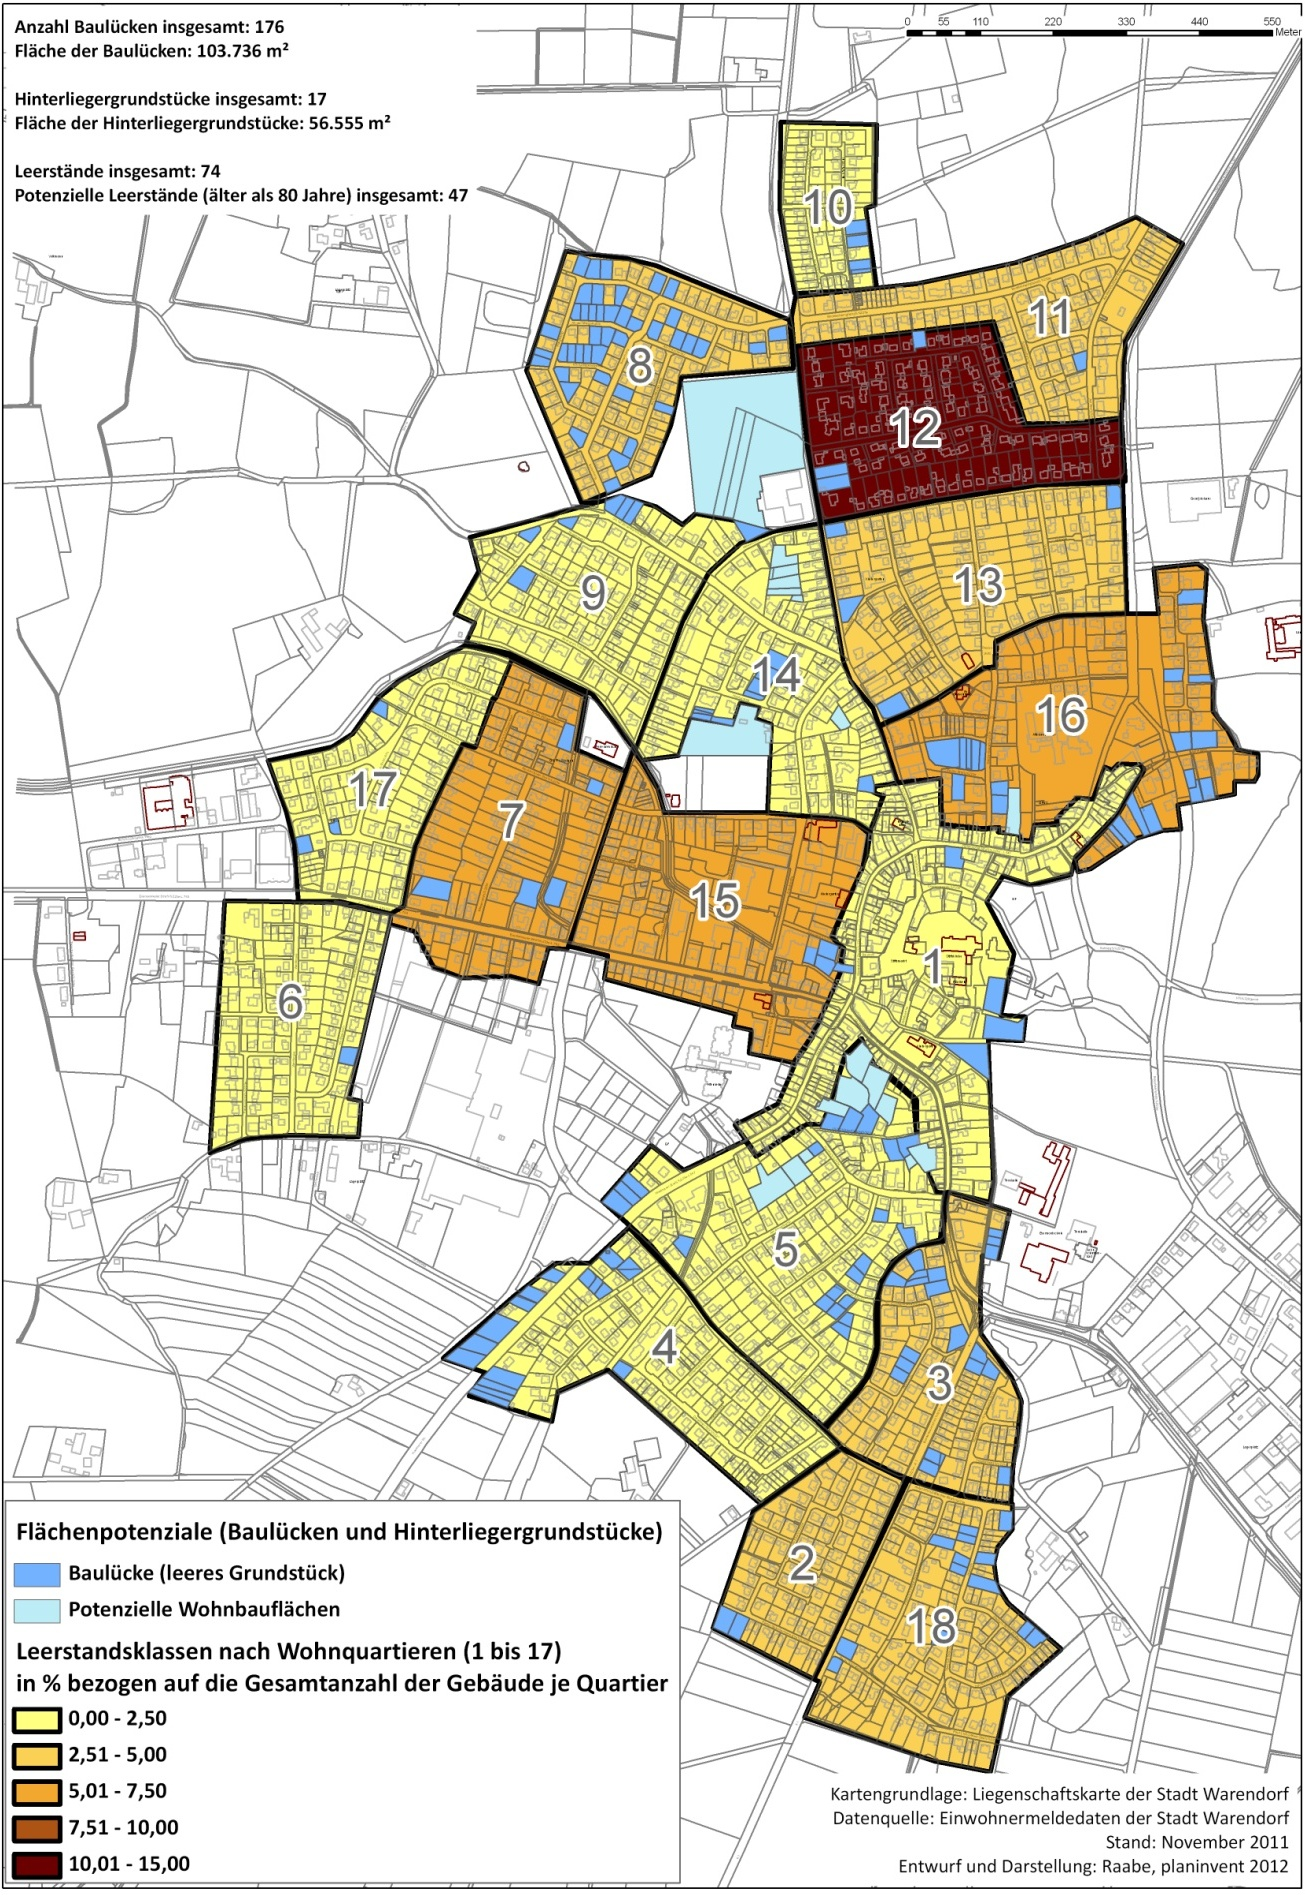 Abb. 24: Aktuelle Flächenpotenziale und Wohnungsleerstände in